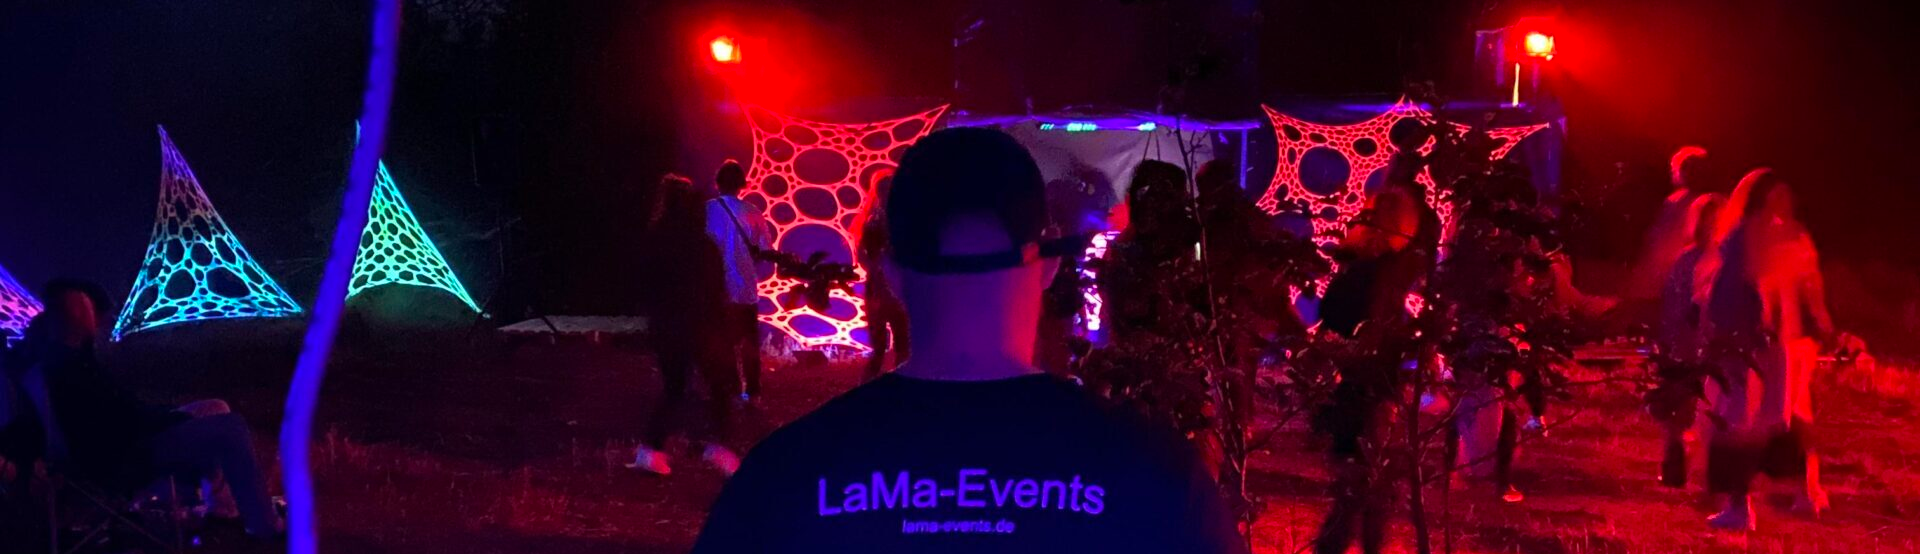 LaMa-Events